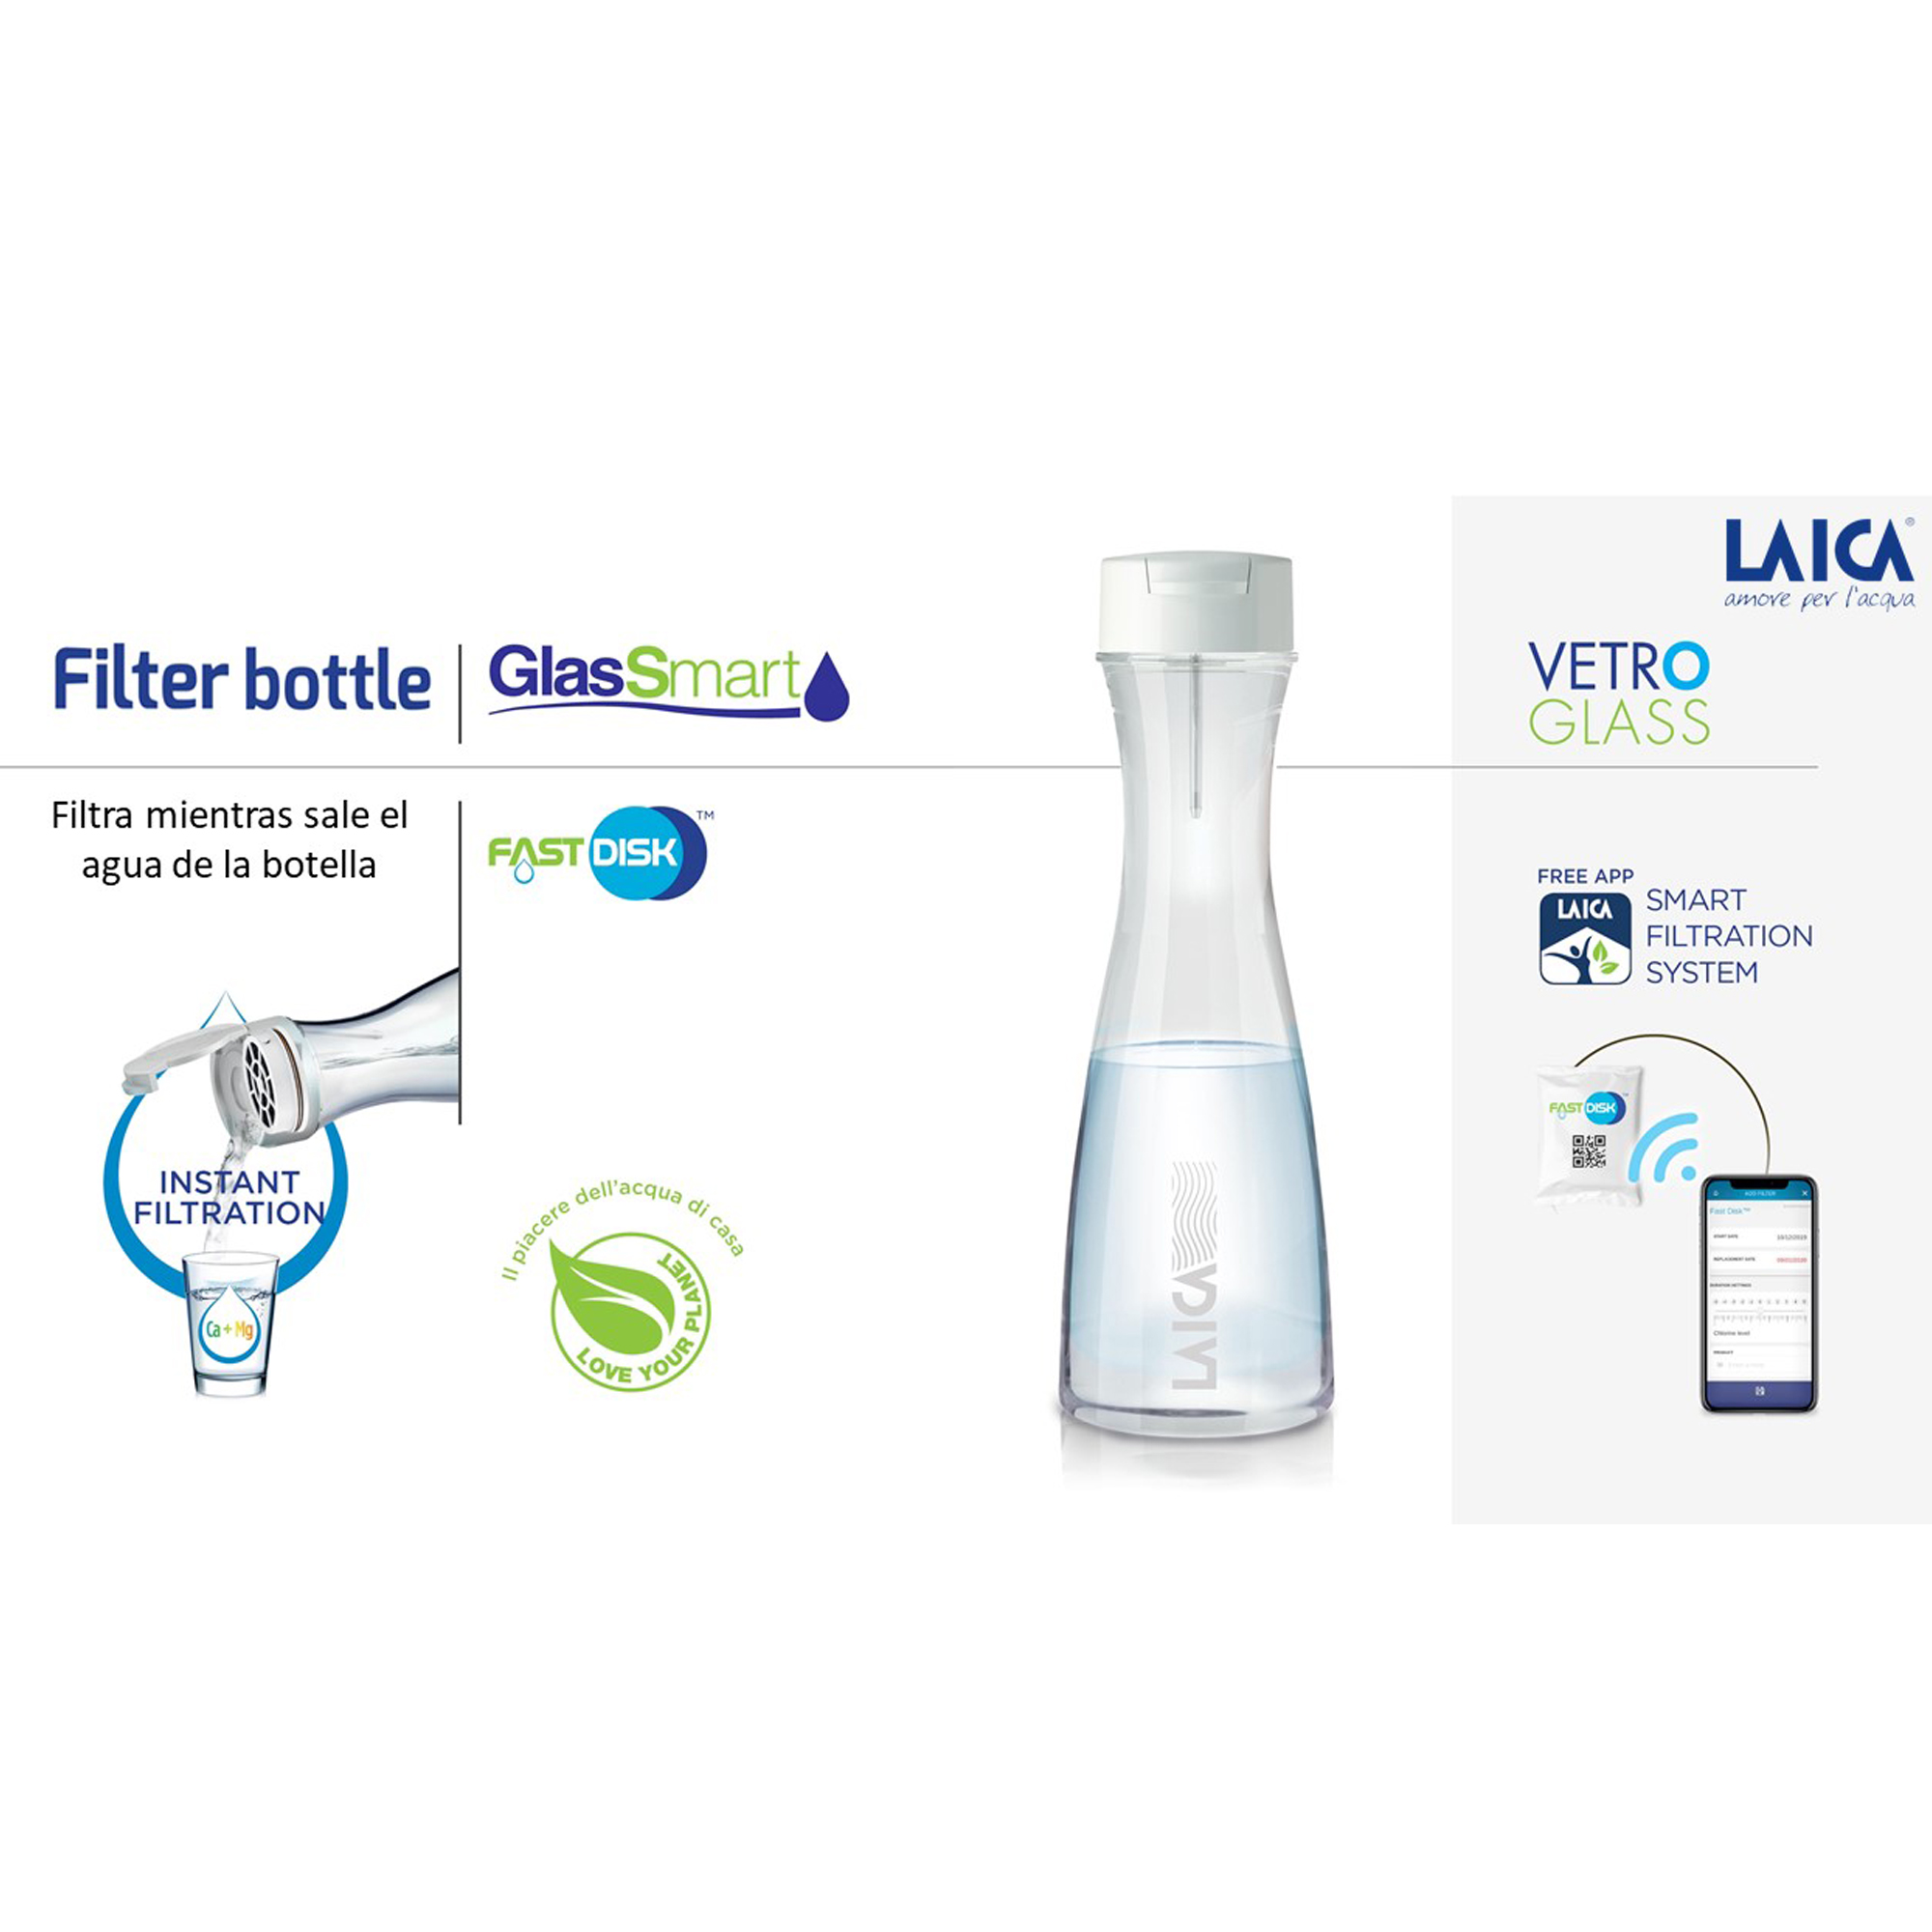 LAICA LA277 Water Blanco filter